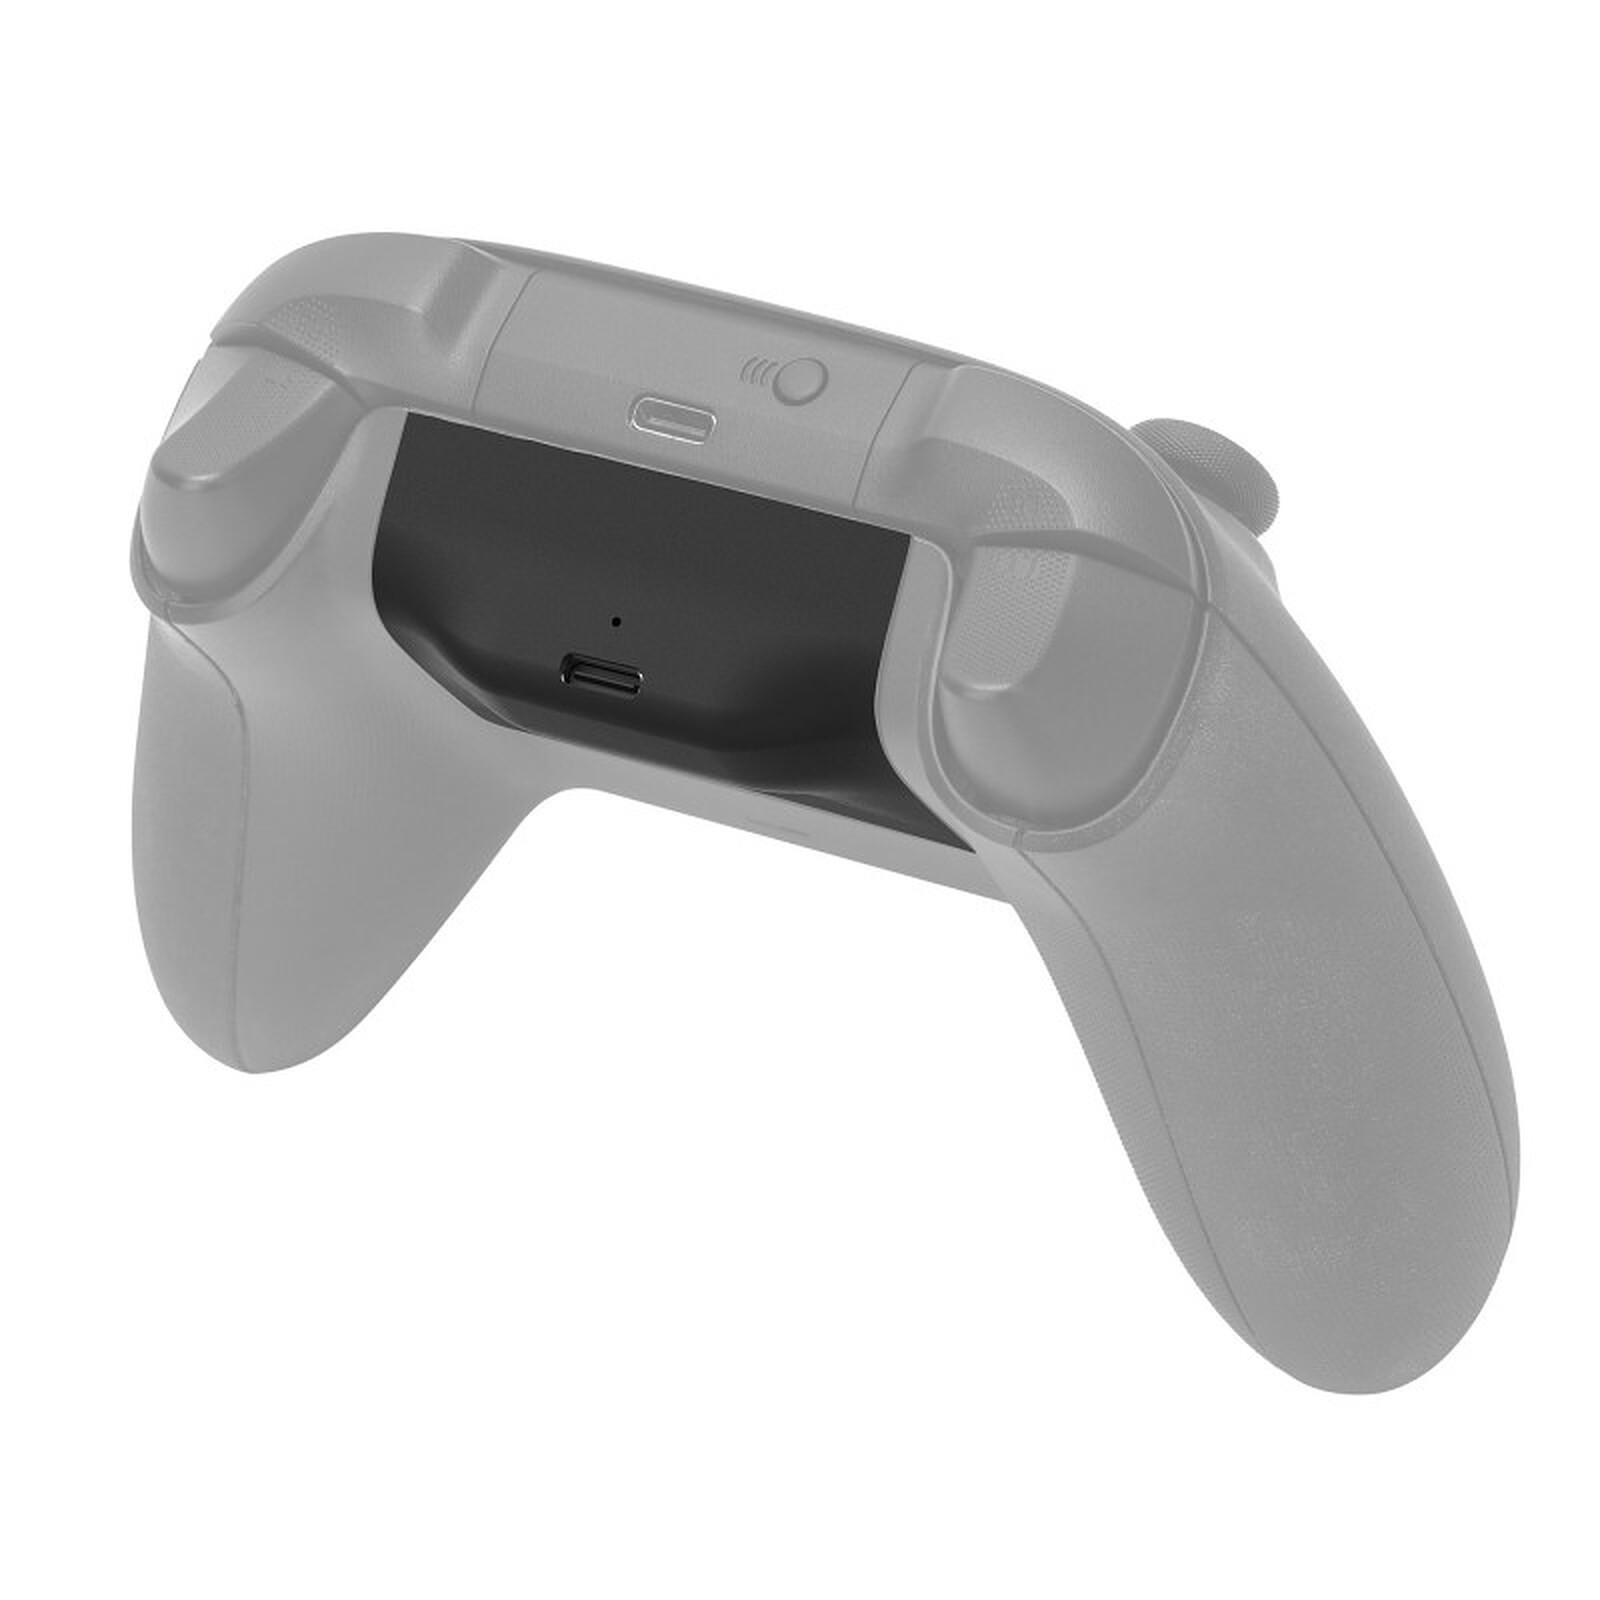 Subsonic - Pack d'accessoires gamer pour manette PS5 - Accessoires PS5 -  LDLC